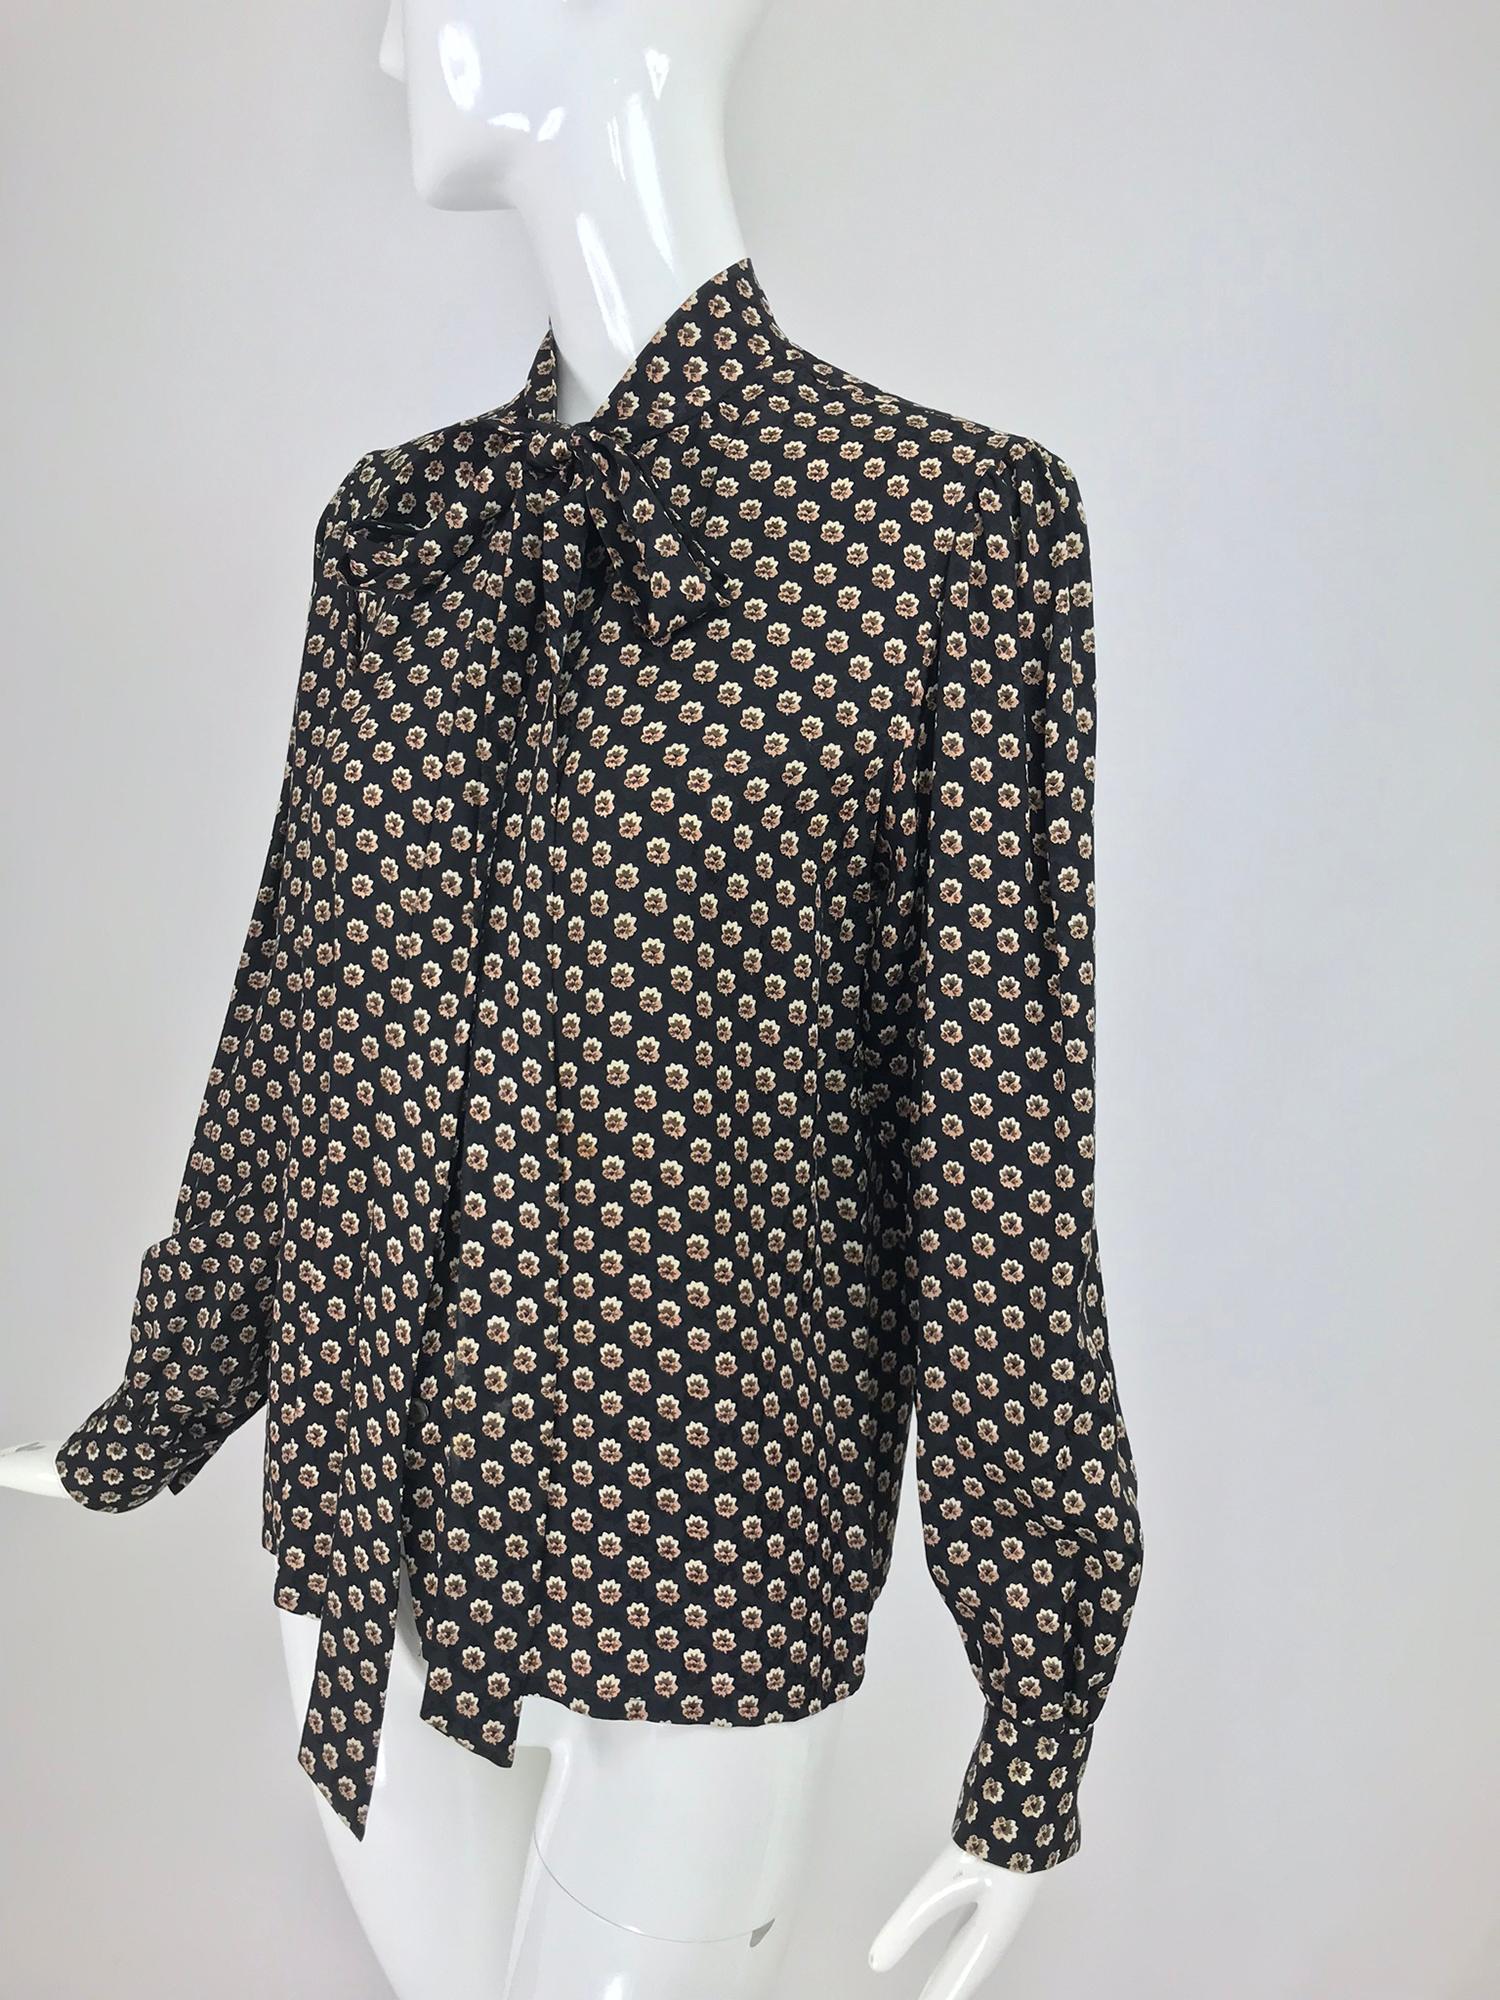 Yves Saint Laurent Provincial Print Silk Bow Neck Blouse 1970s 10